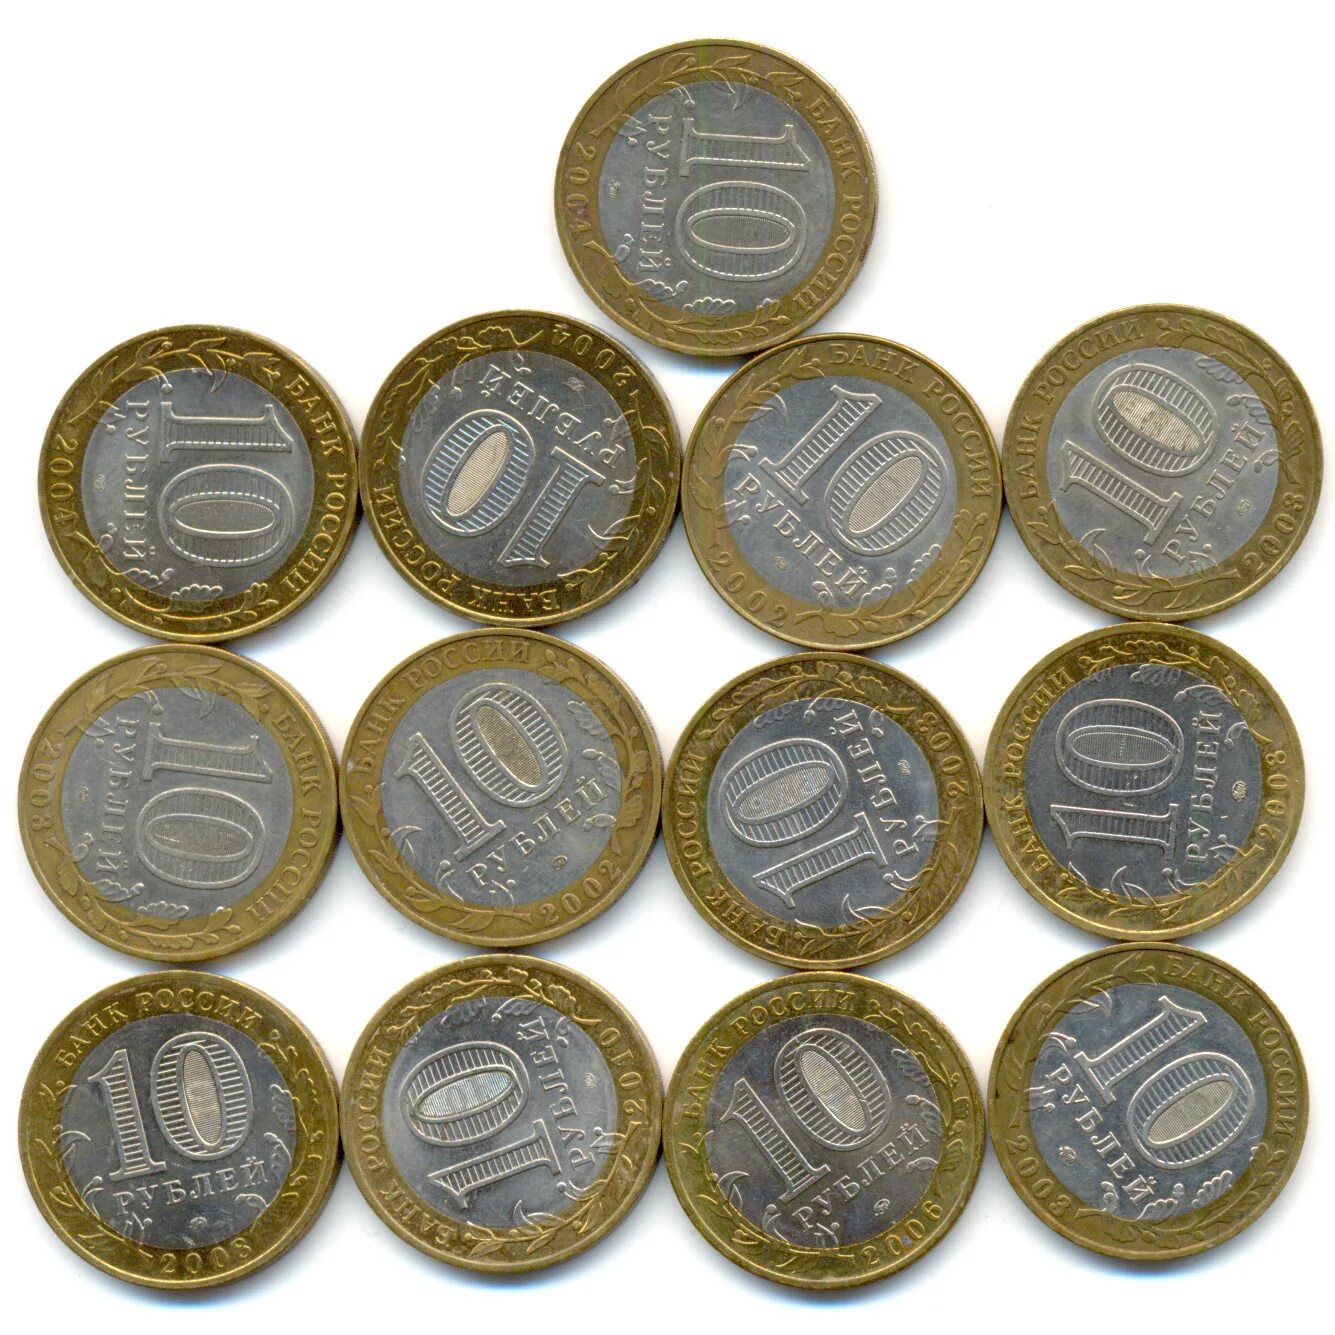 Купить монеты официально. Коллекционные монеты. Редкие коллекционные монеты. Юбилейные монеты. Коллекционные 10 рублевые монеты.